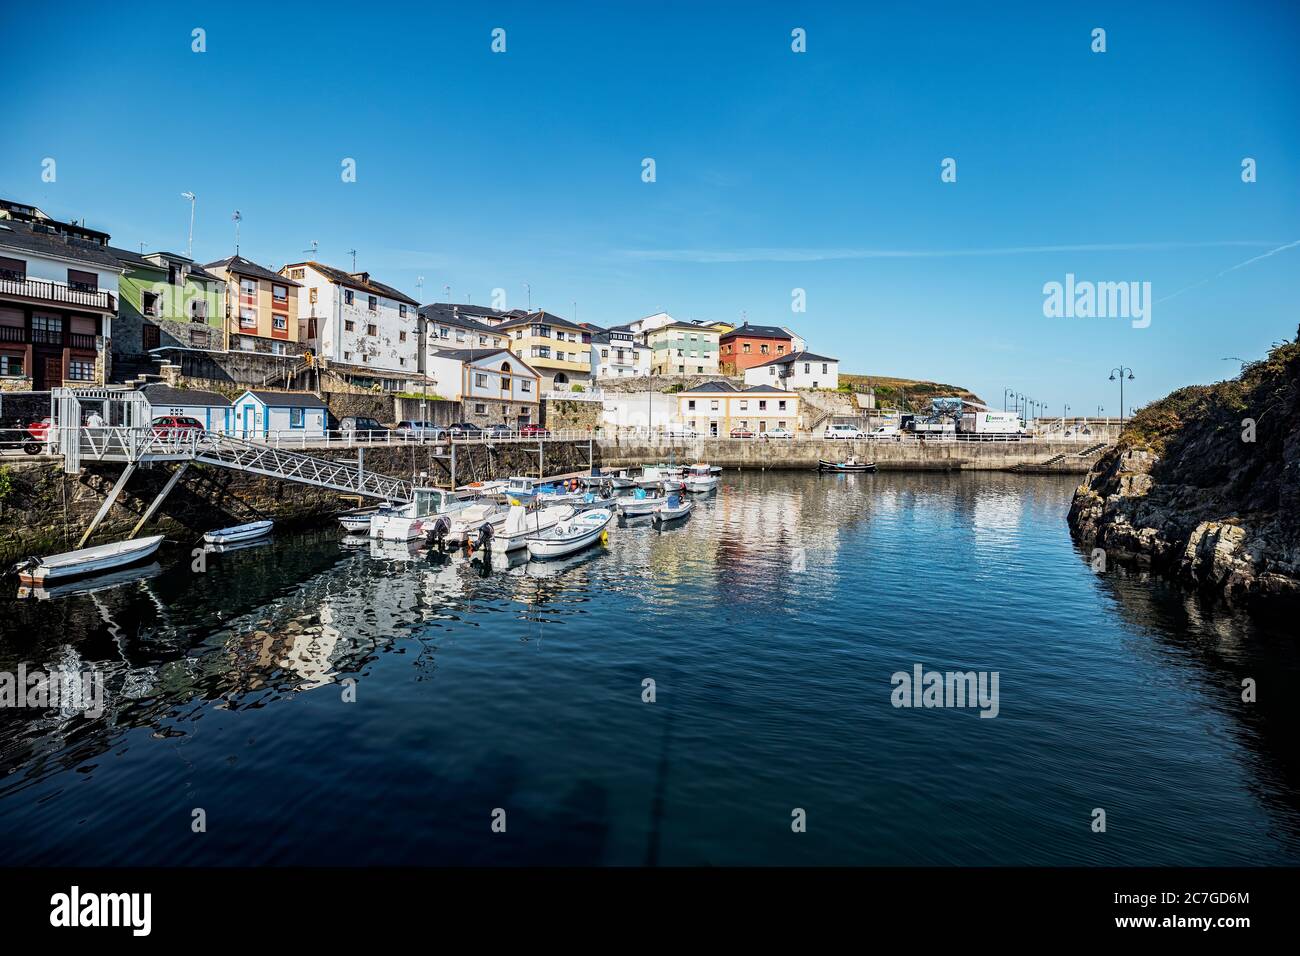 Puerto de Vega, Spanien - August 23 2019: Schöner und malerischer Hafen in Puerto de Vega, Navia. Es wurde mit dem Titel «Beispielstadt Asturiens» ausgezeichnet Stockfoto